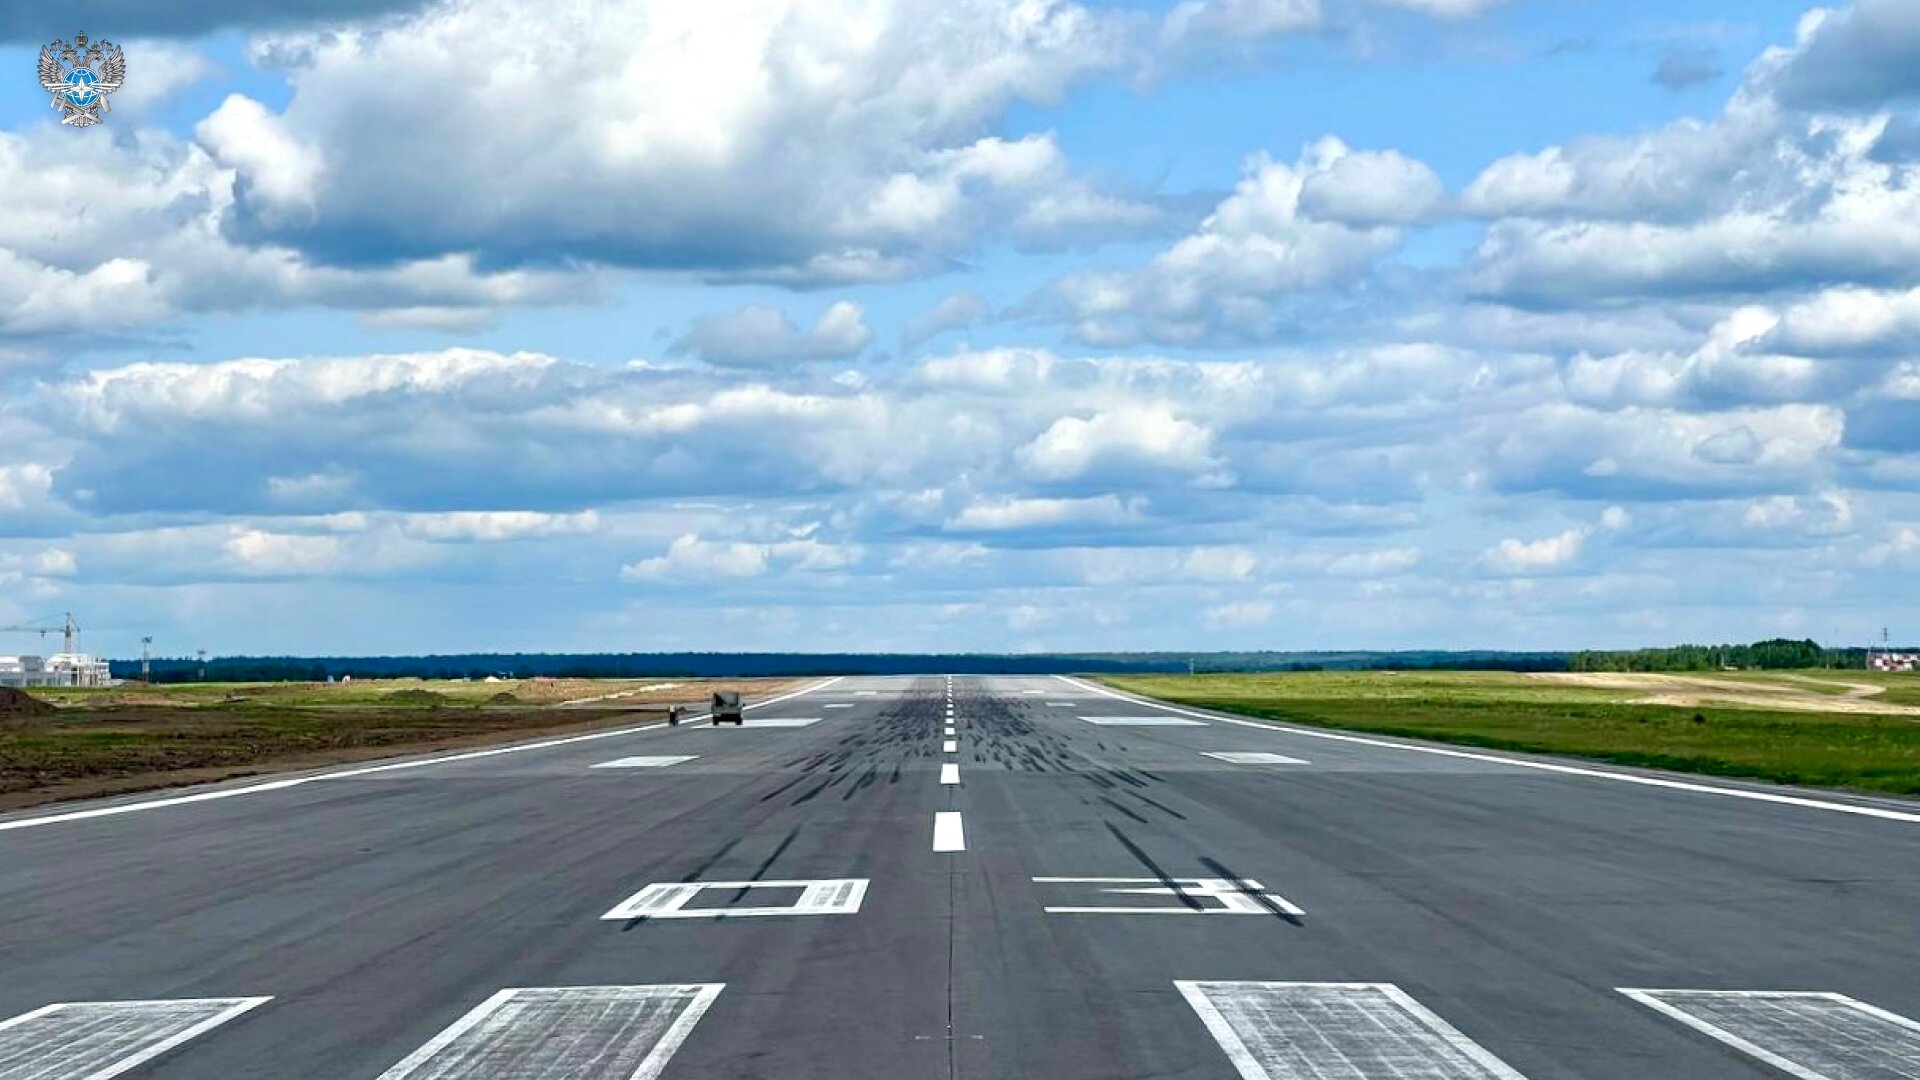 Руководство Томской области высоко оценило качество новой взлетно-посадочной полосы аэропорта «Богашево» после реконструкции